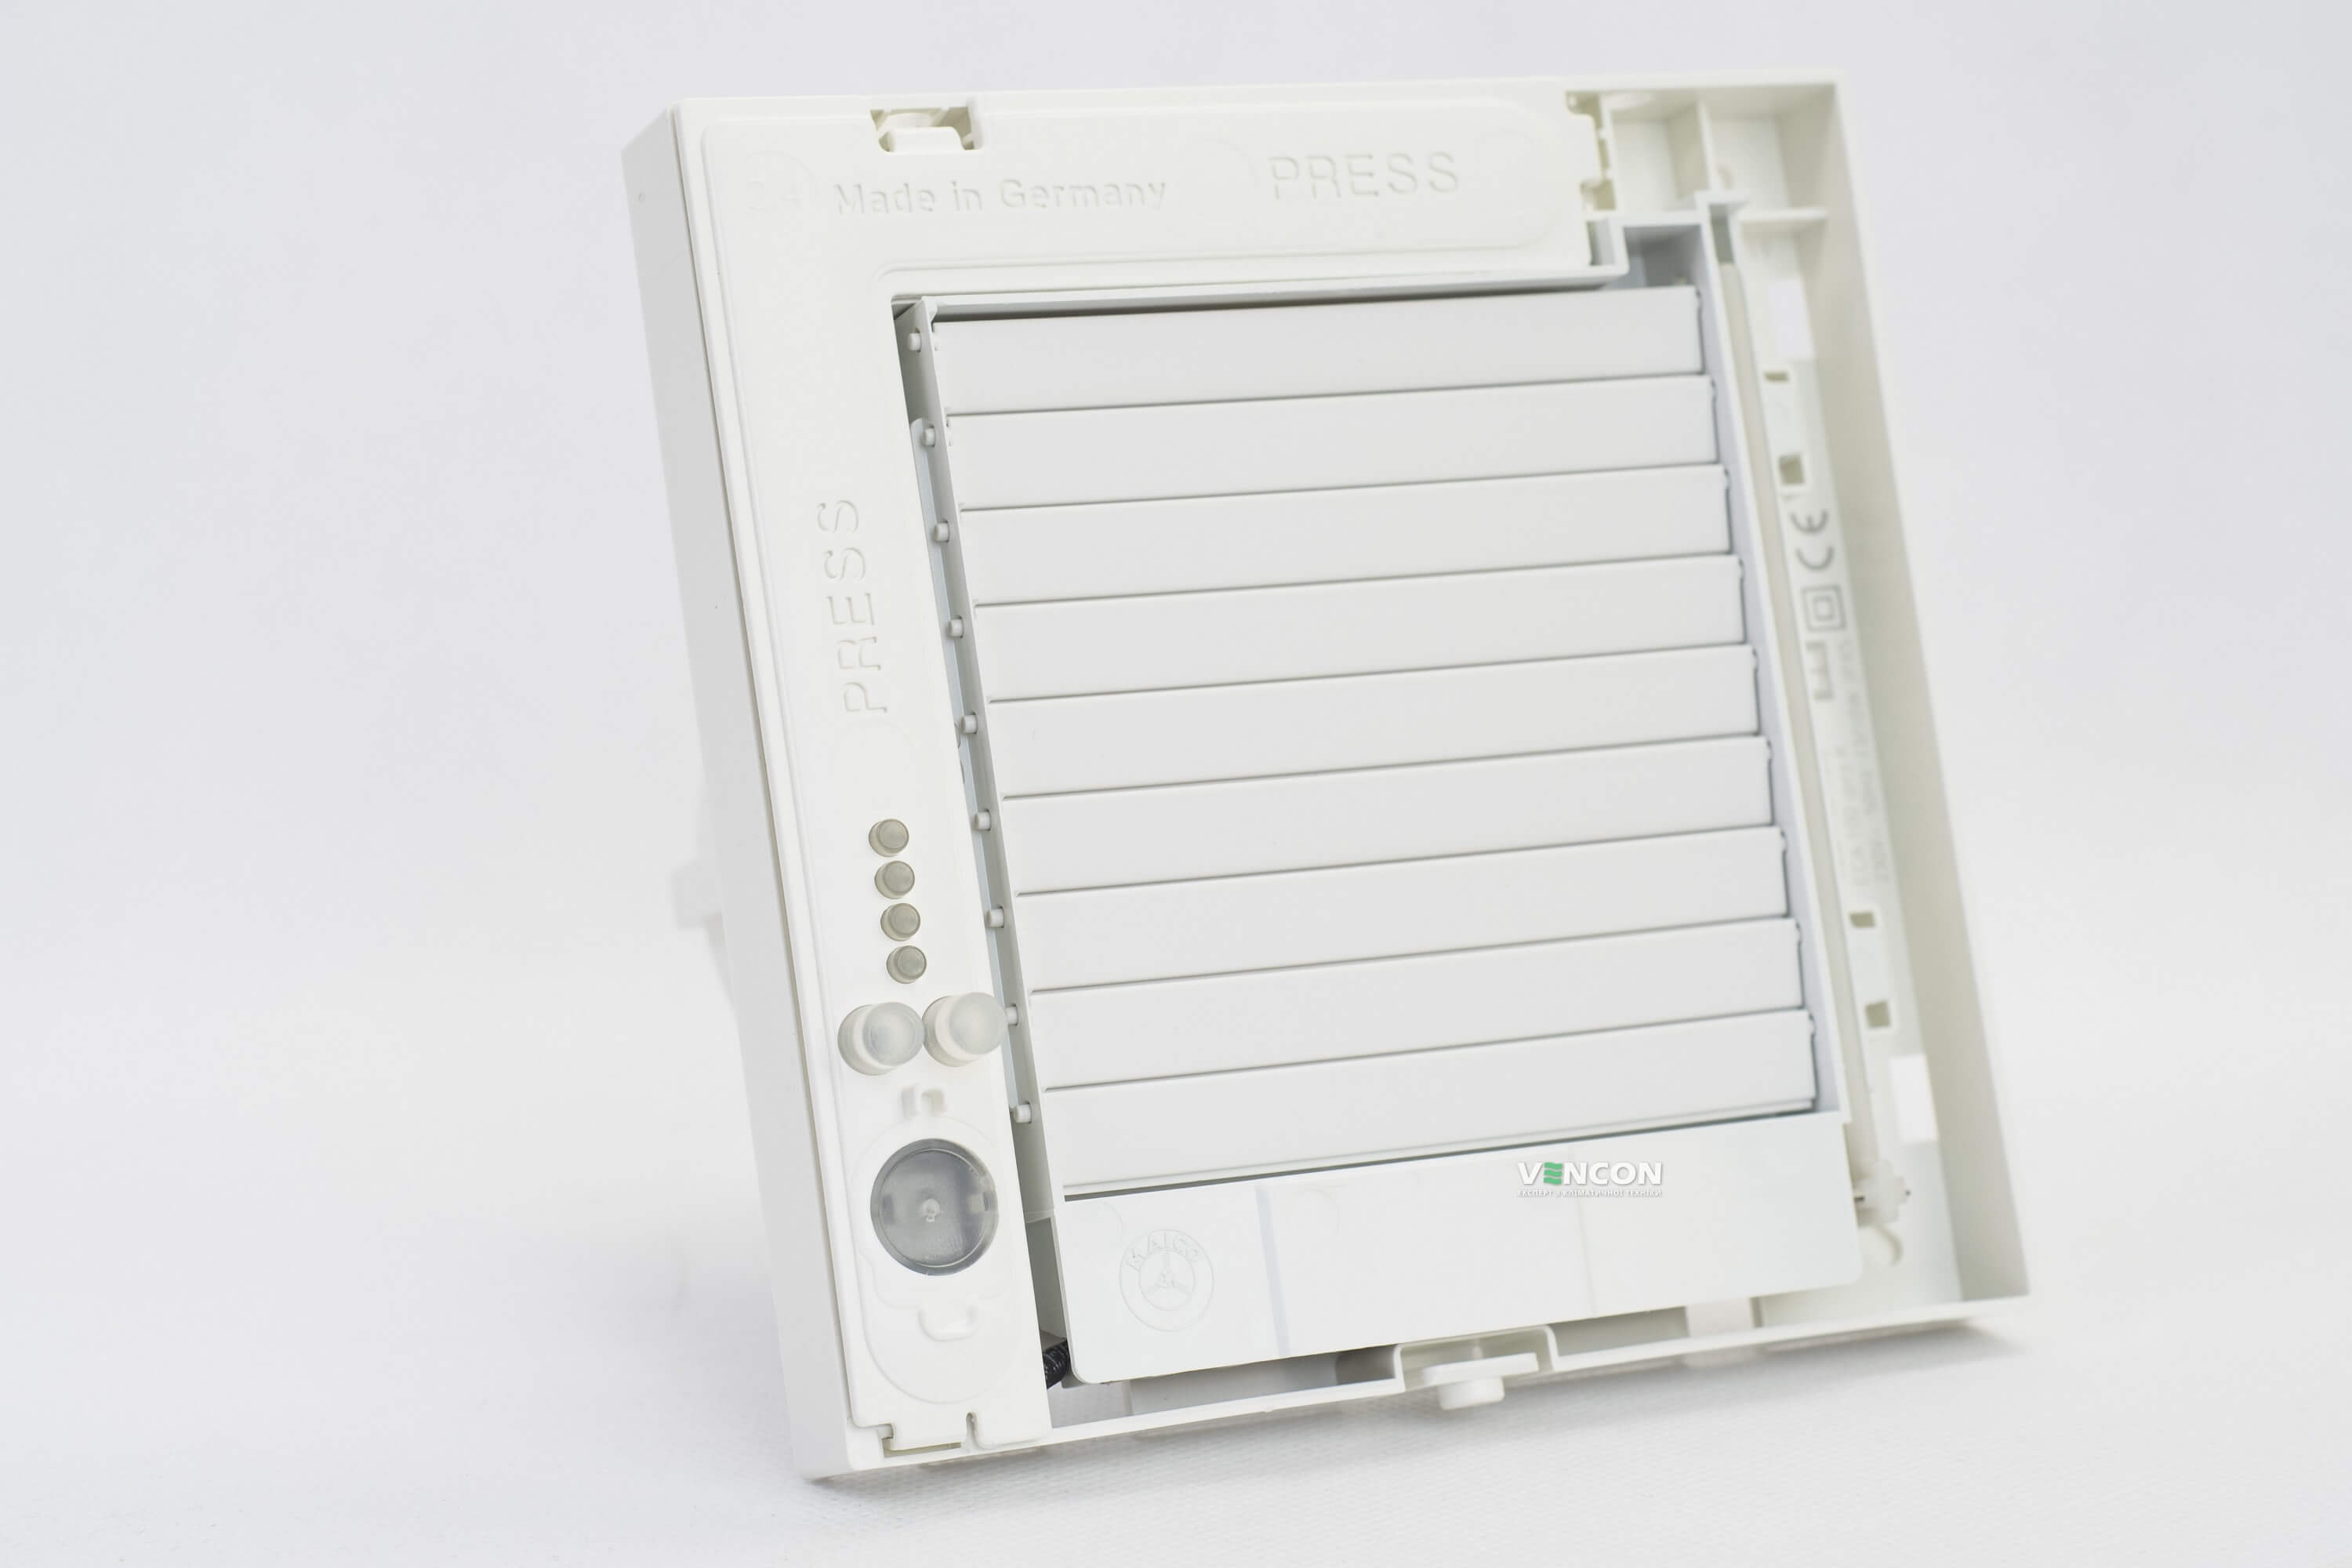 Вытяжной вентилятор Maico ECA 150 ipro KB отзывы - изображения 5